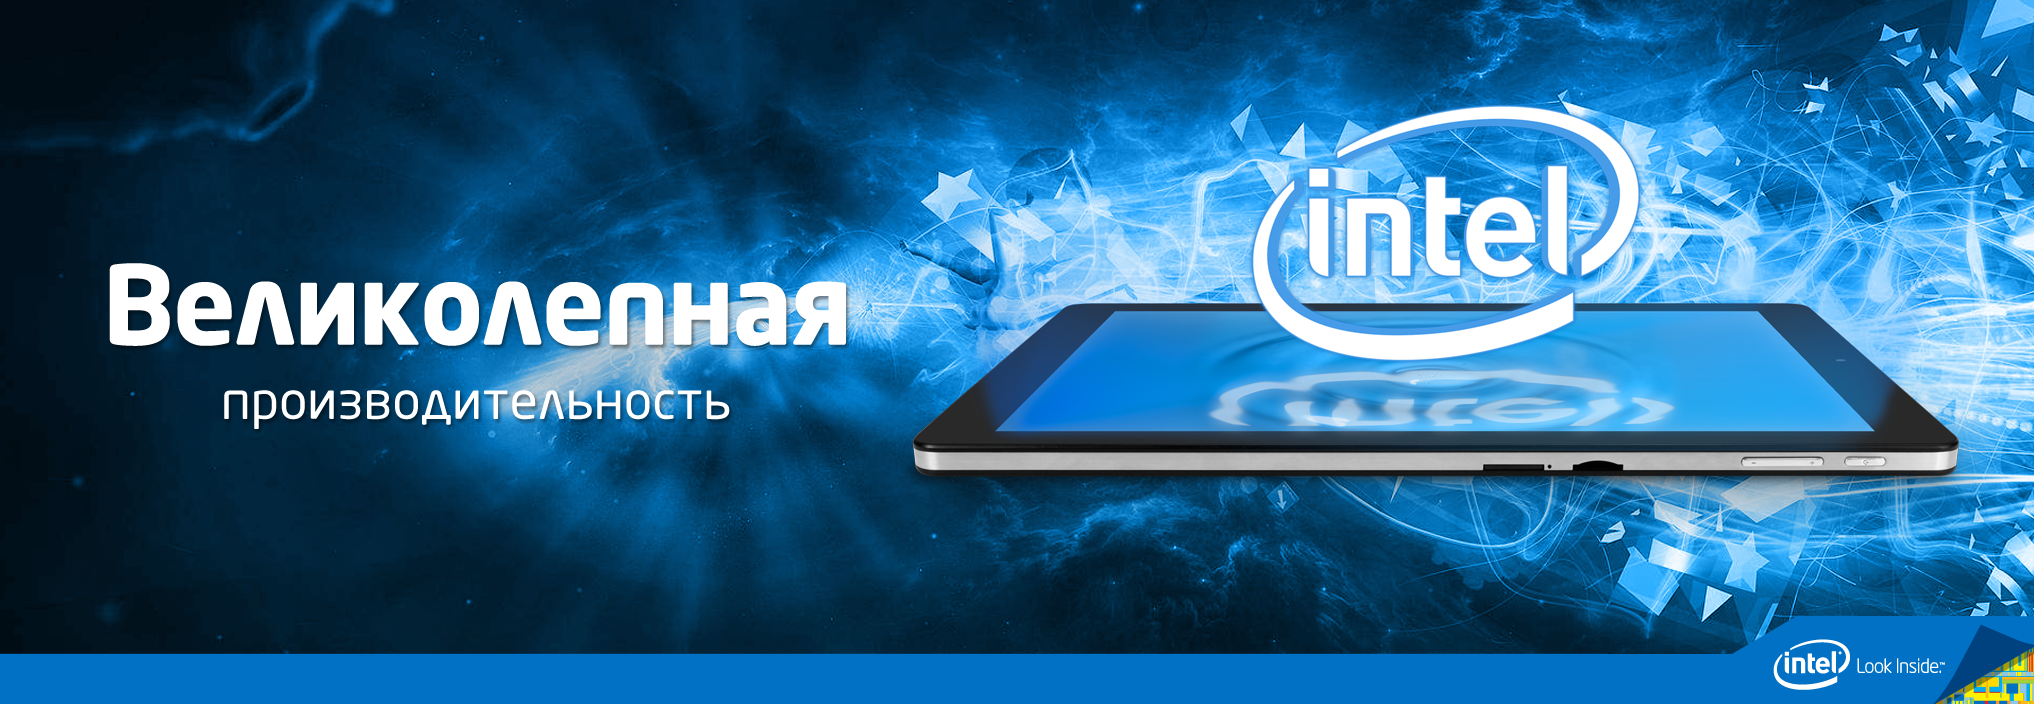 Реклама Intel-планшета